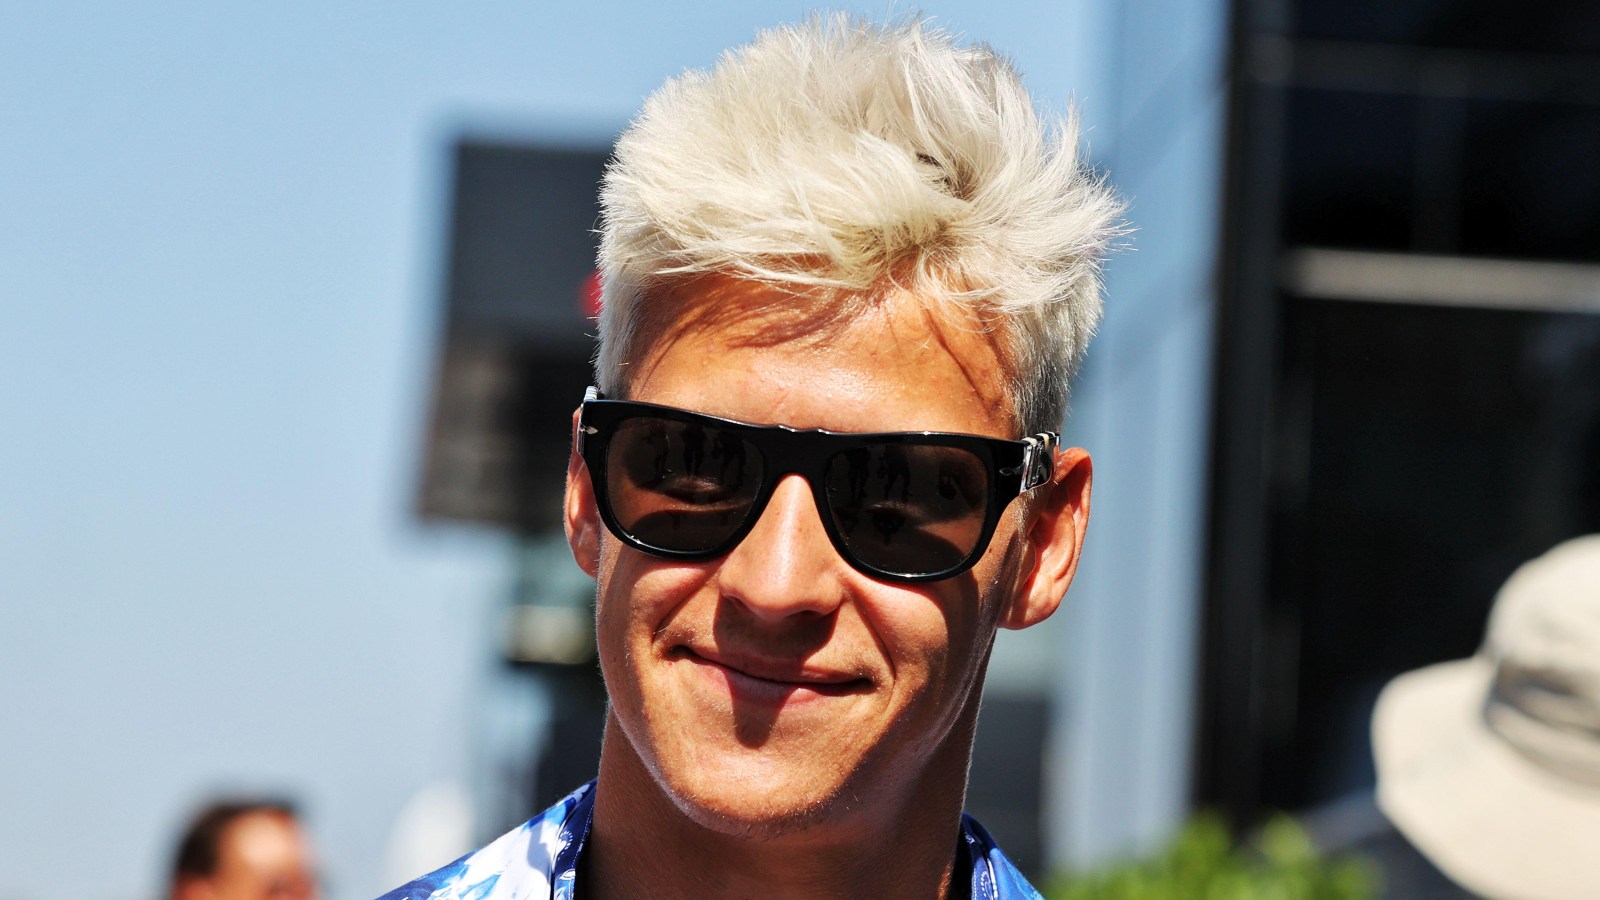 MotoGP champion Fabio Quartararo. Paul Ricard, July 2022.